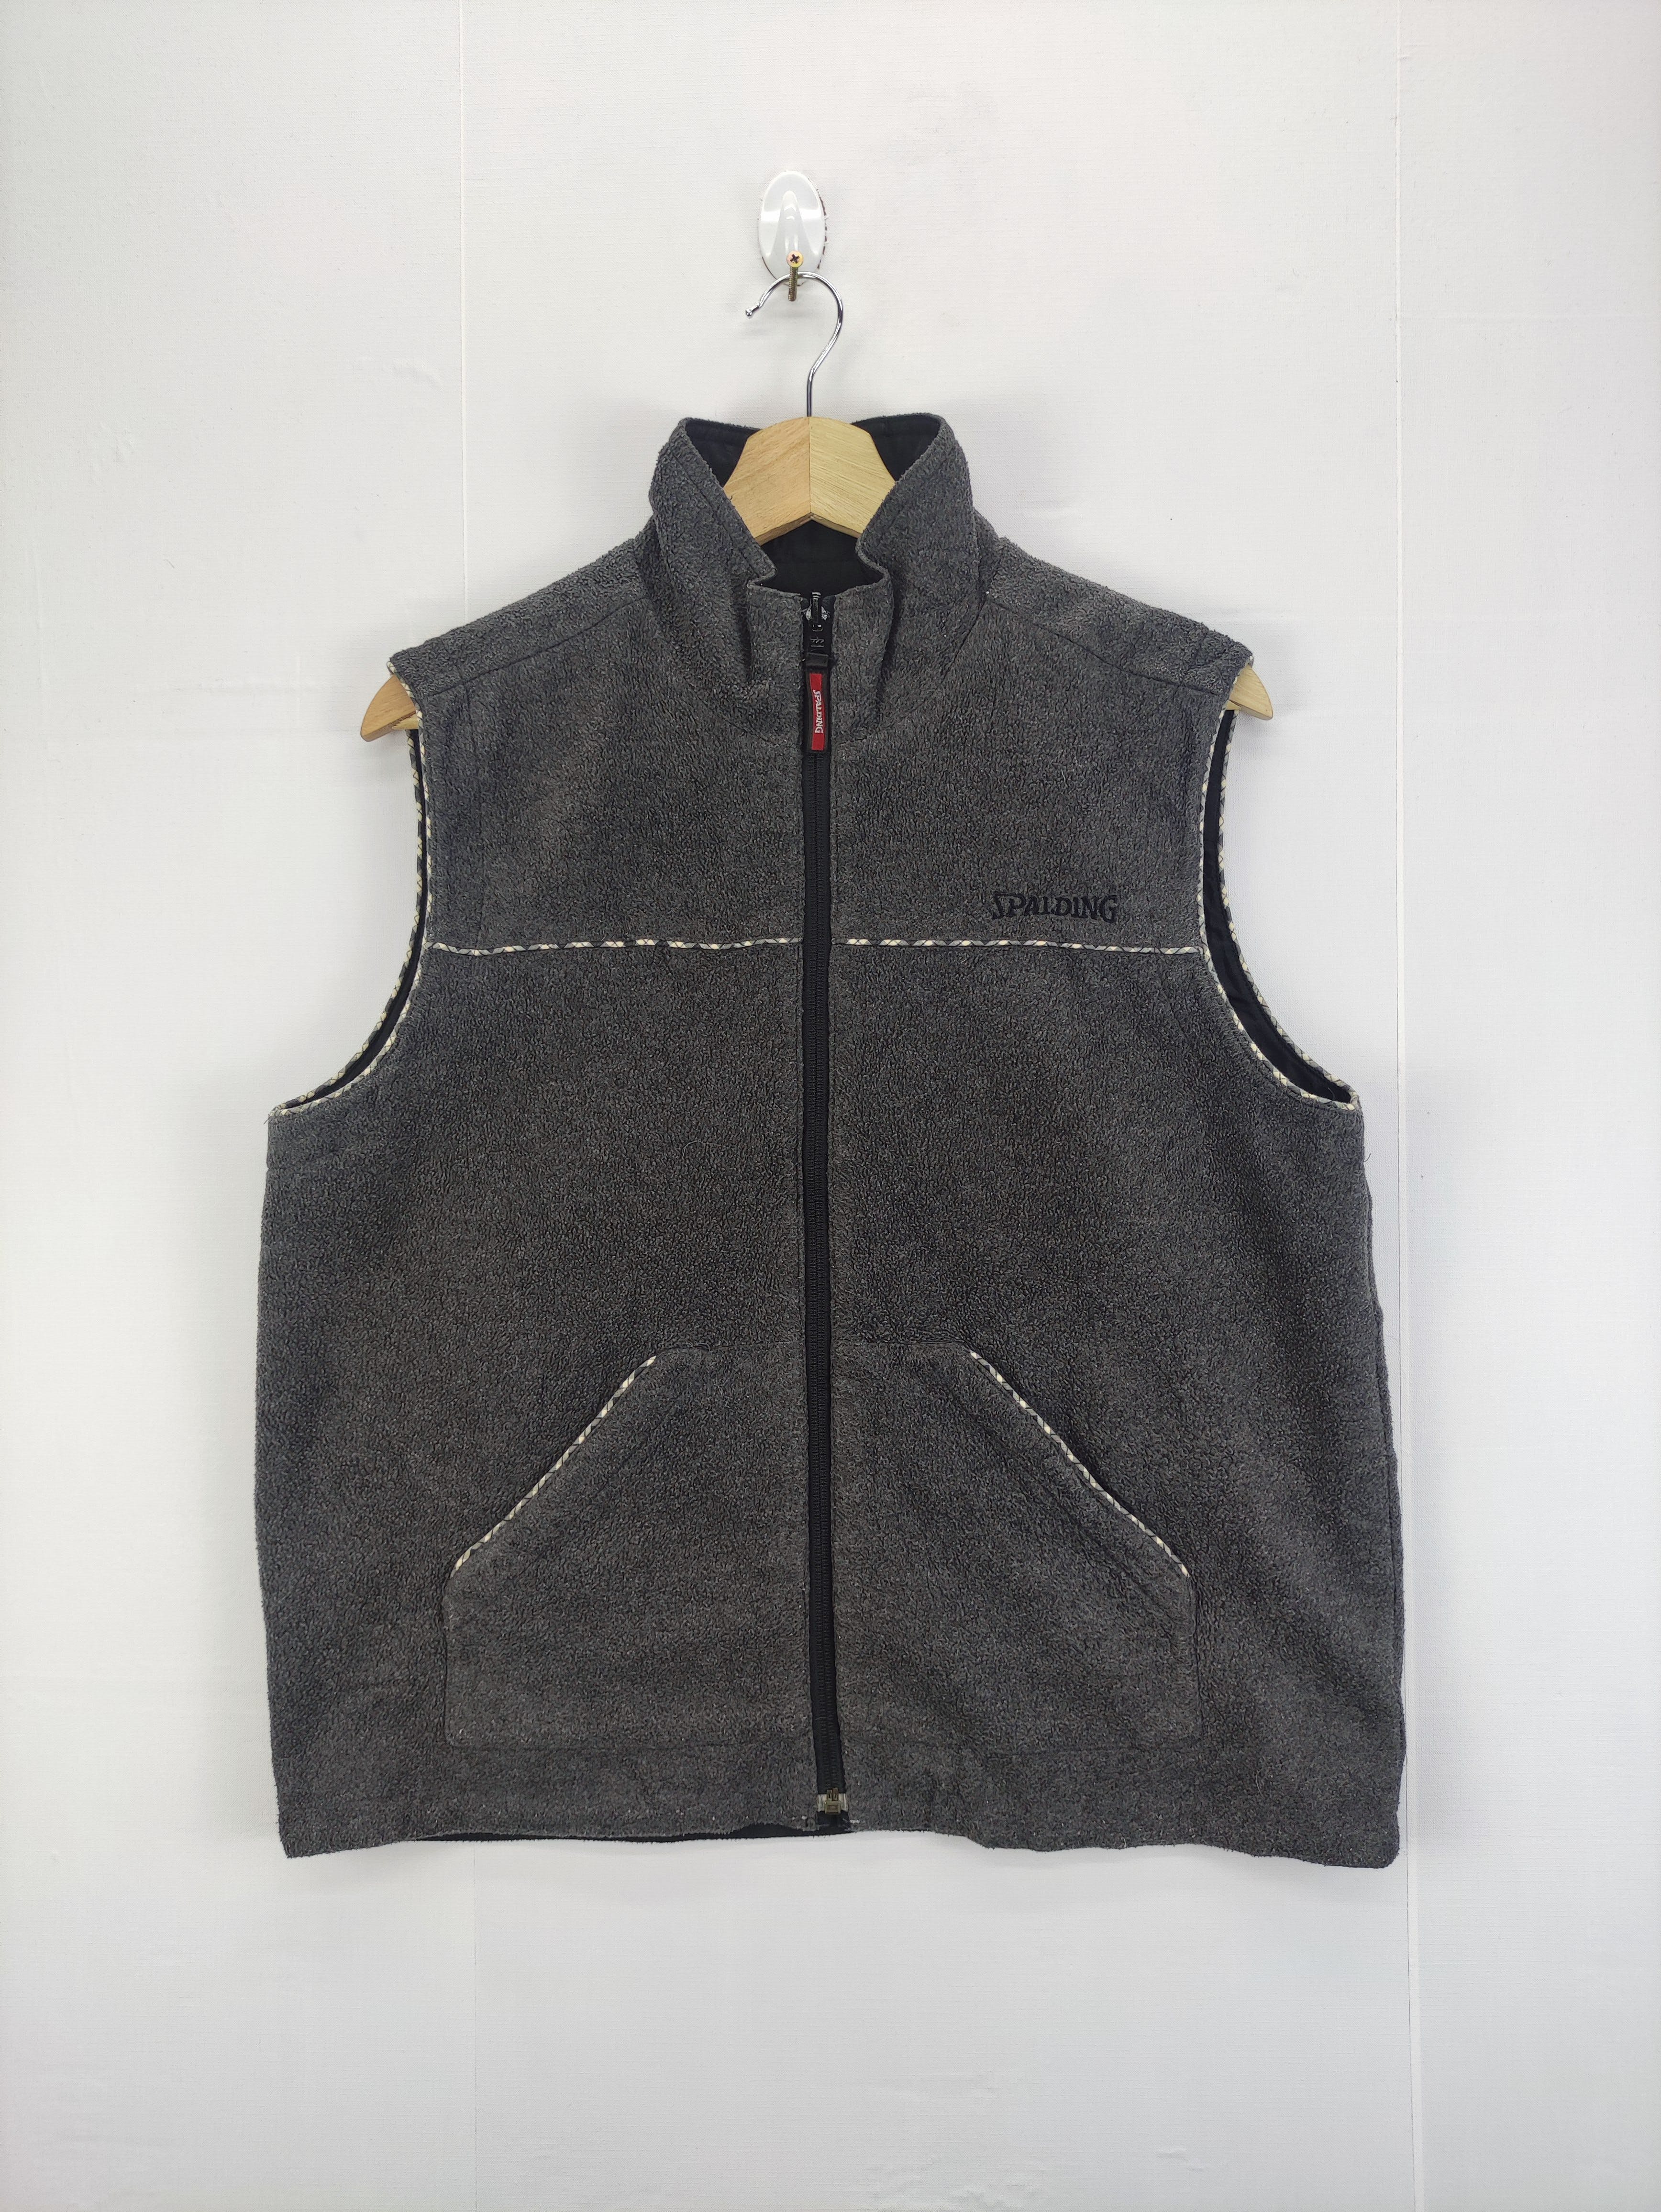 Vintage Spalding Vest Fleece Reversible Zipper - 1